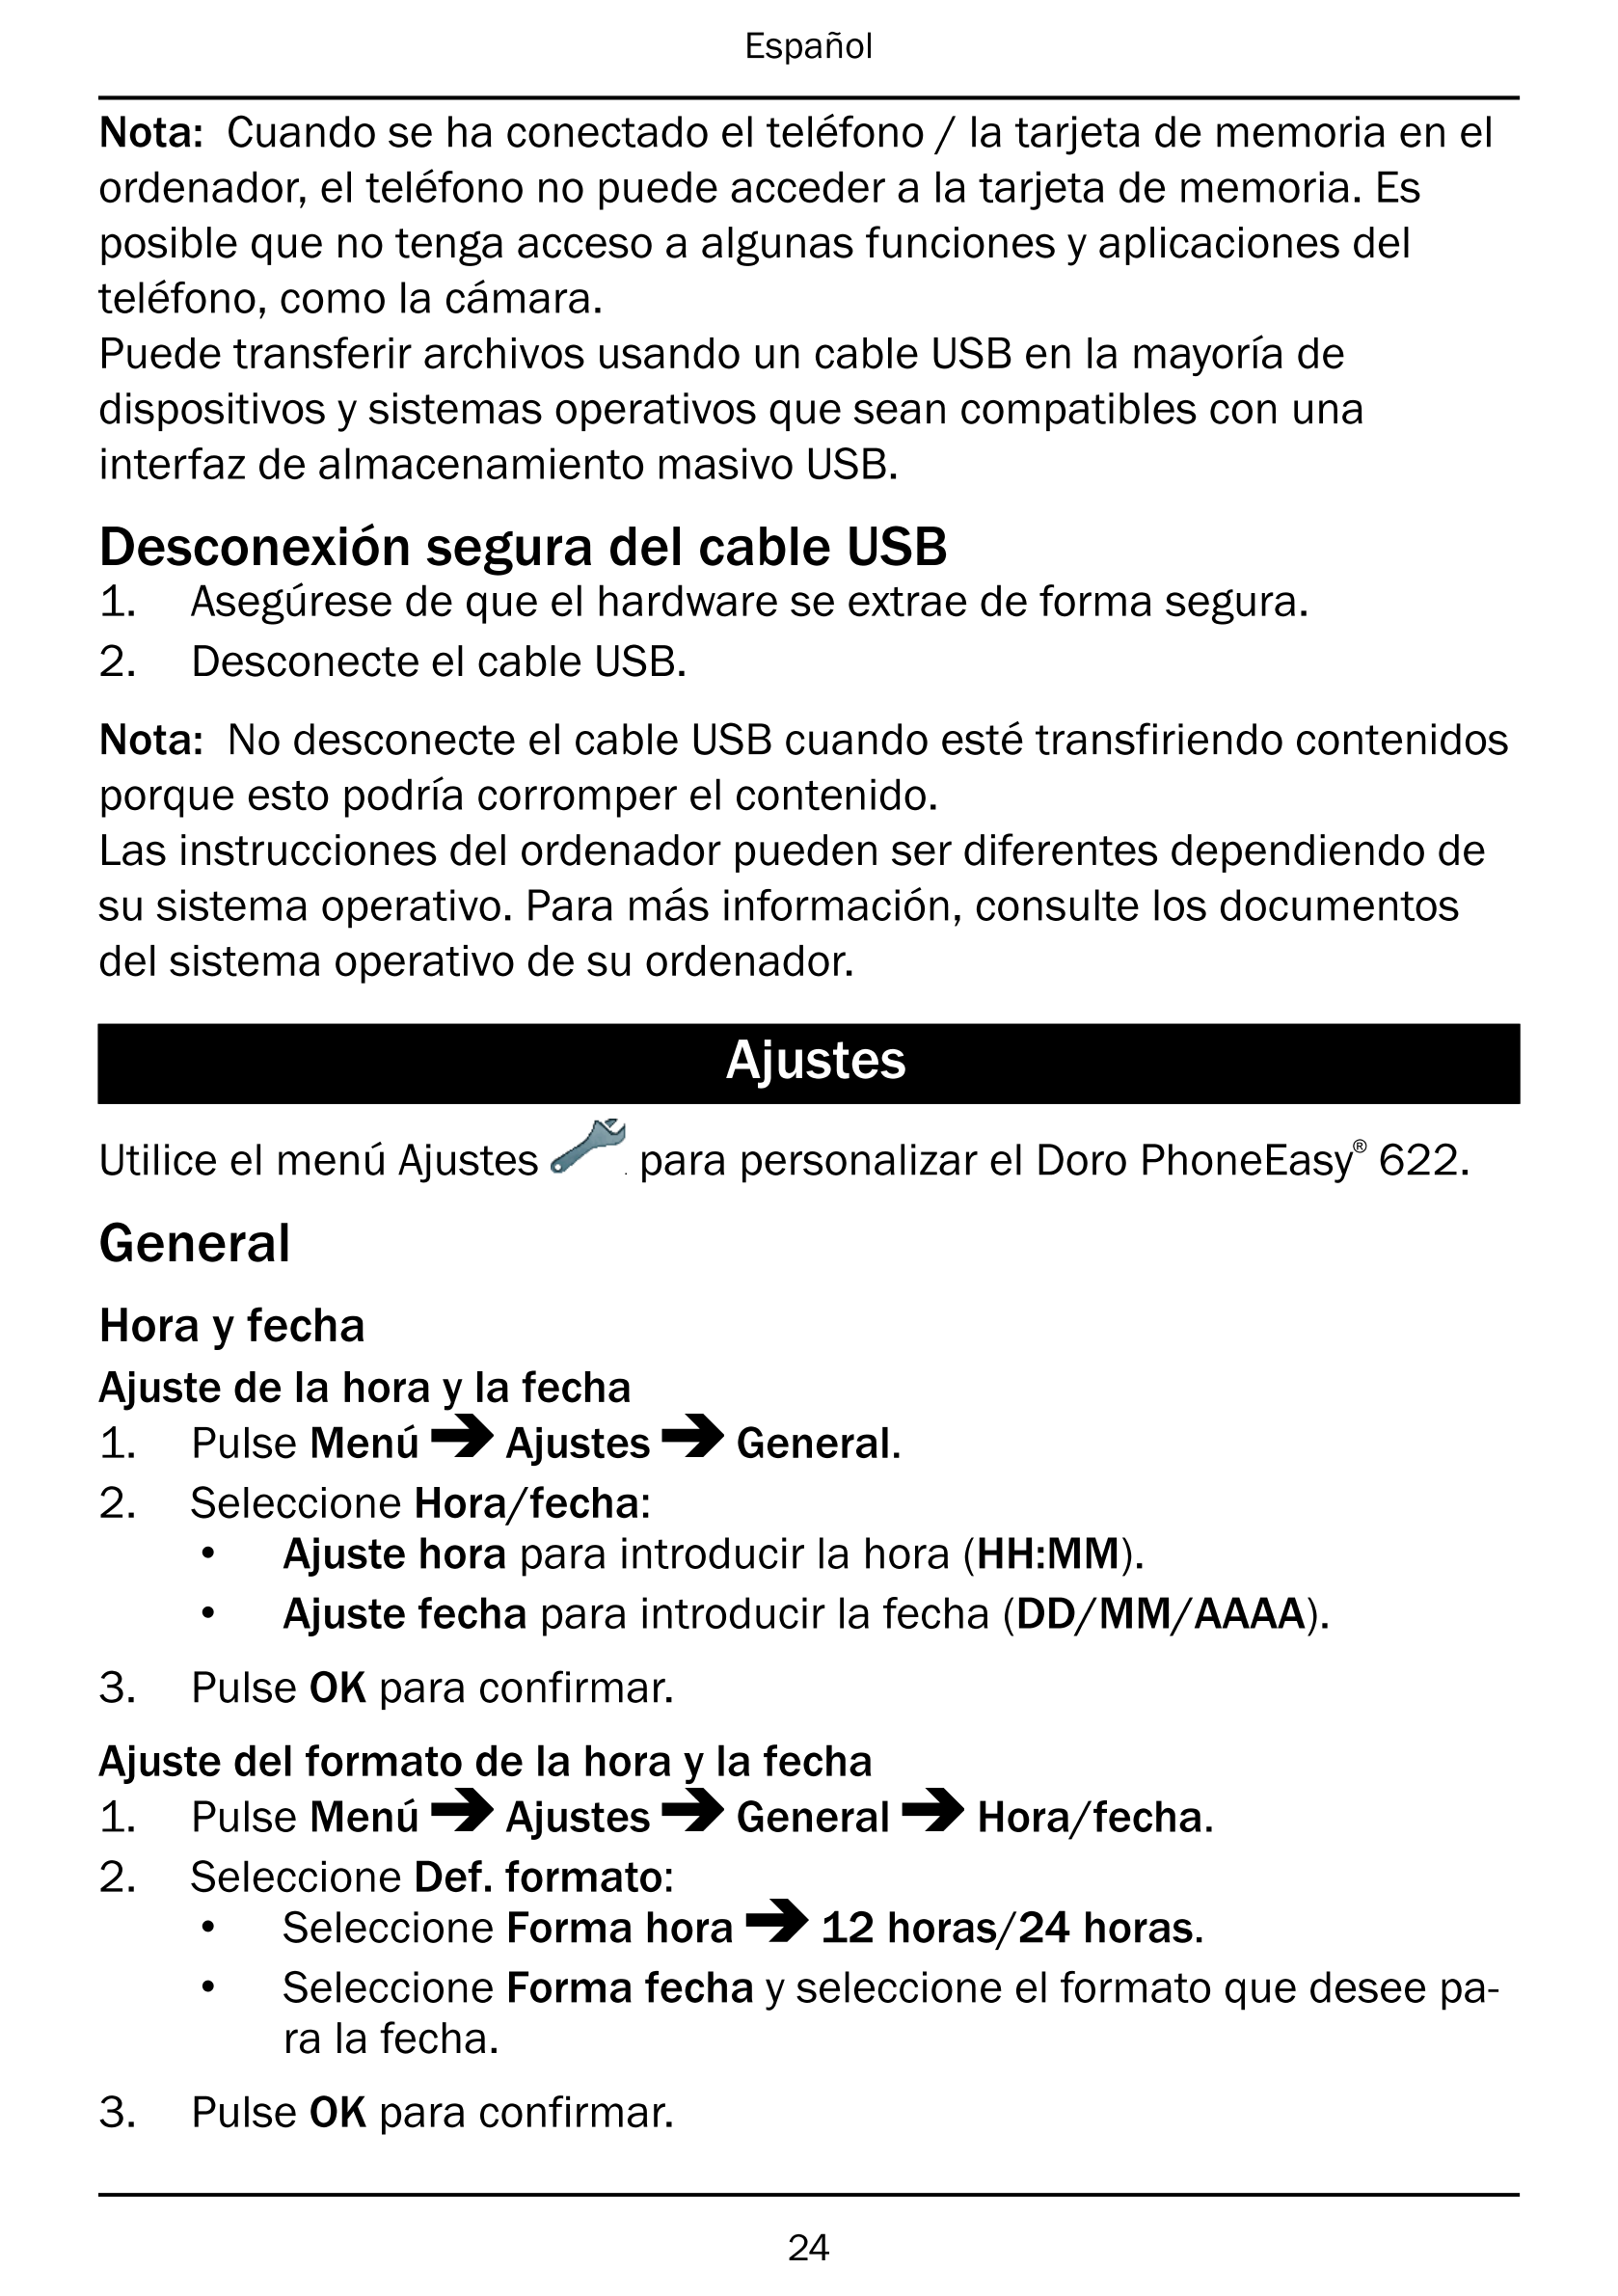 Español
Nota: Cuando se ha conectado el teléfono / la tarjeta de memoria en el
ordenador, el teléfono no puede acceder a la tarj